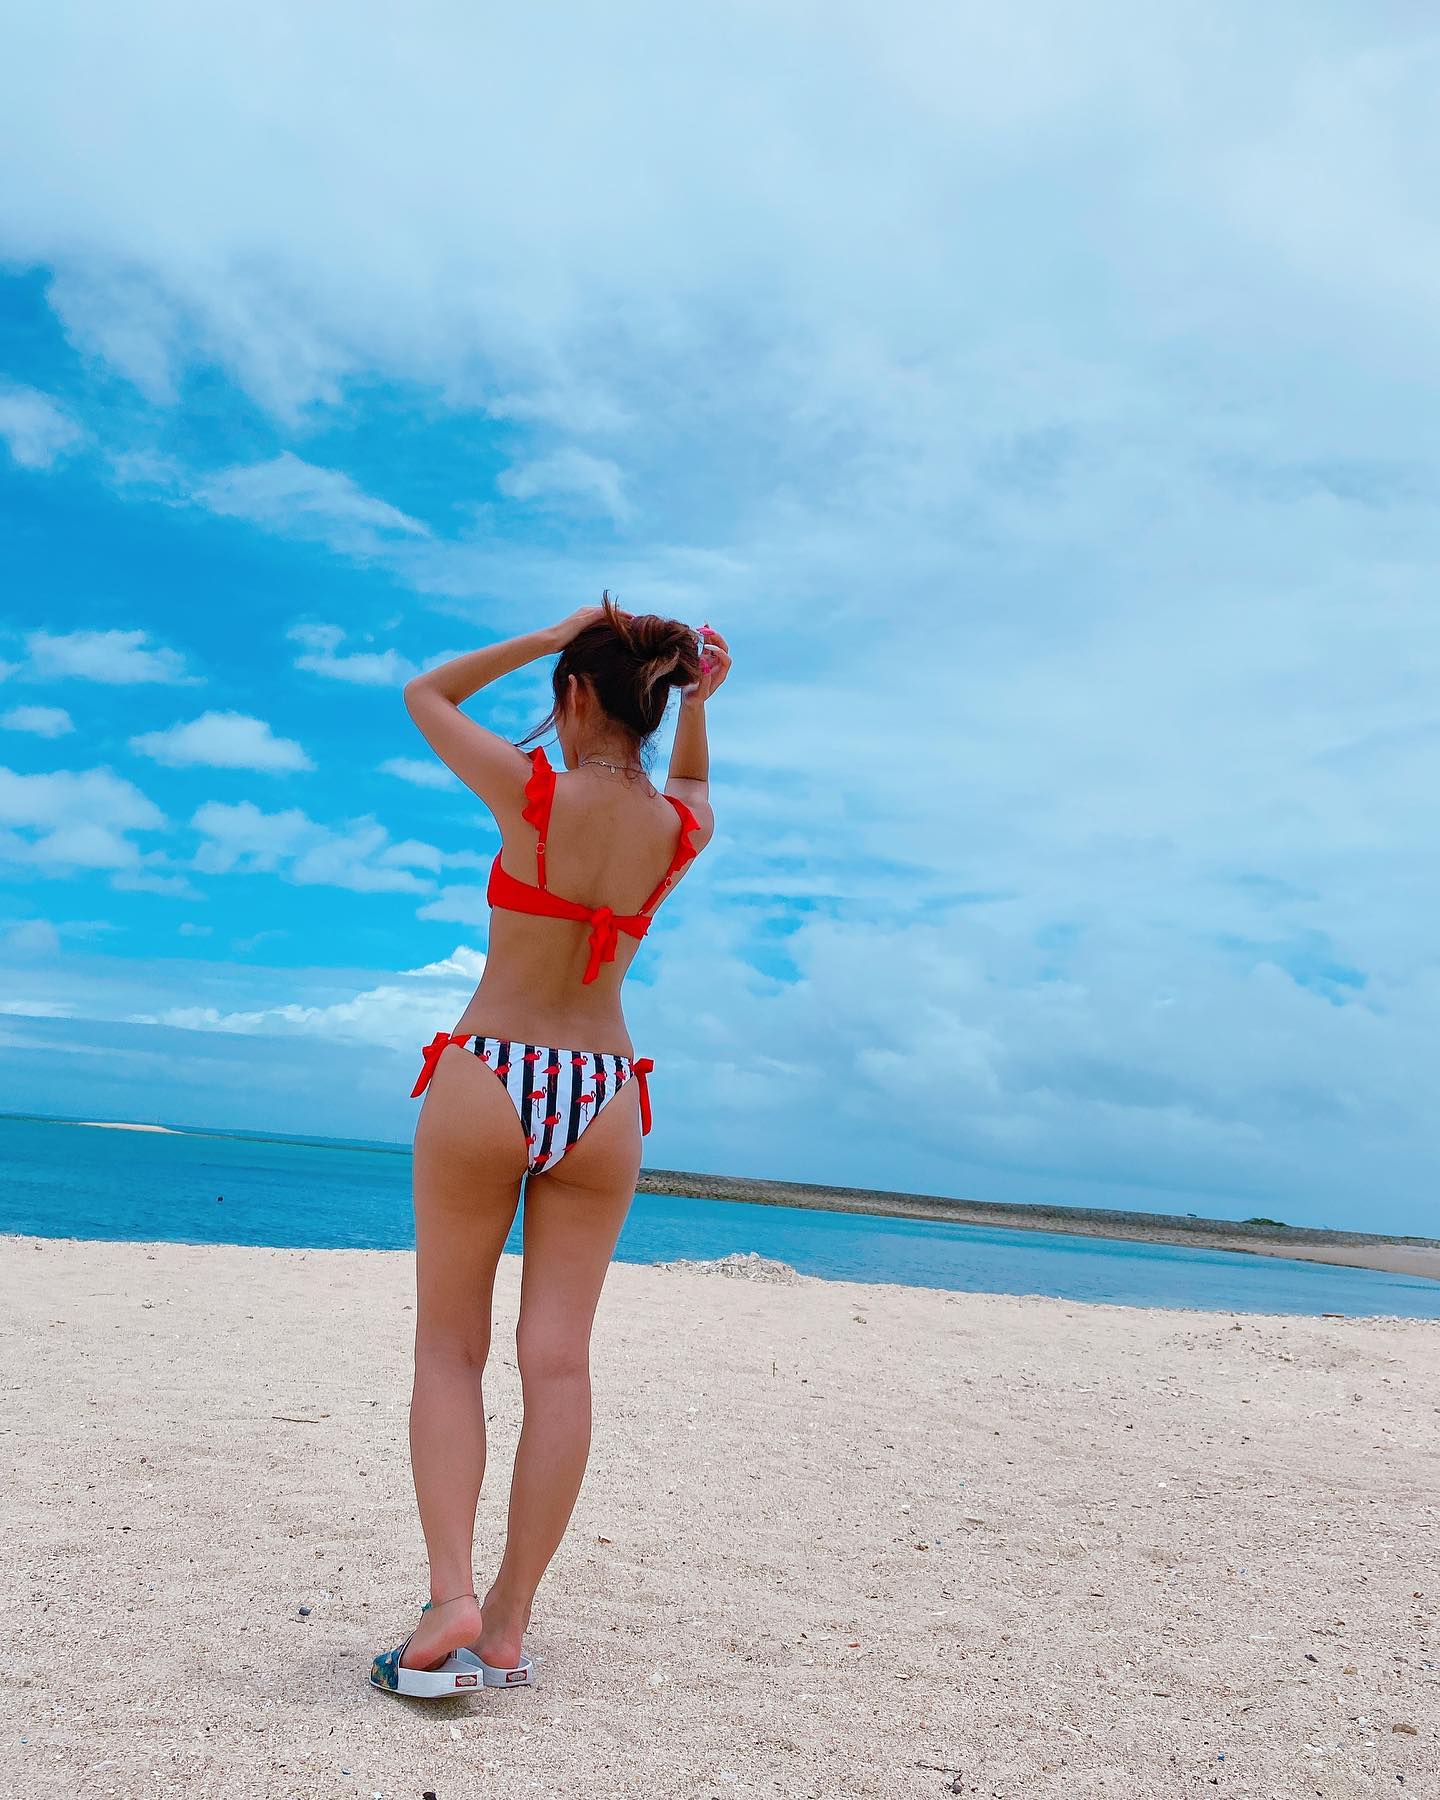 21 05 27 海 沖縄 Okinawa 沖縄旅行 沖縄観光 Okinawatrip Beachday Beachgirl Swimwear Bikini ビキニ Bikinigirl 比基尼 水着 水着ギャル ビキニギャル ビ 沖縄グラム Jp